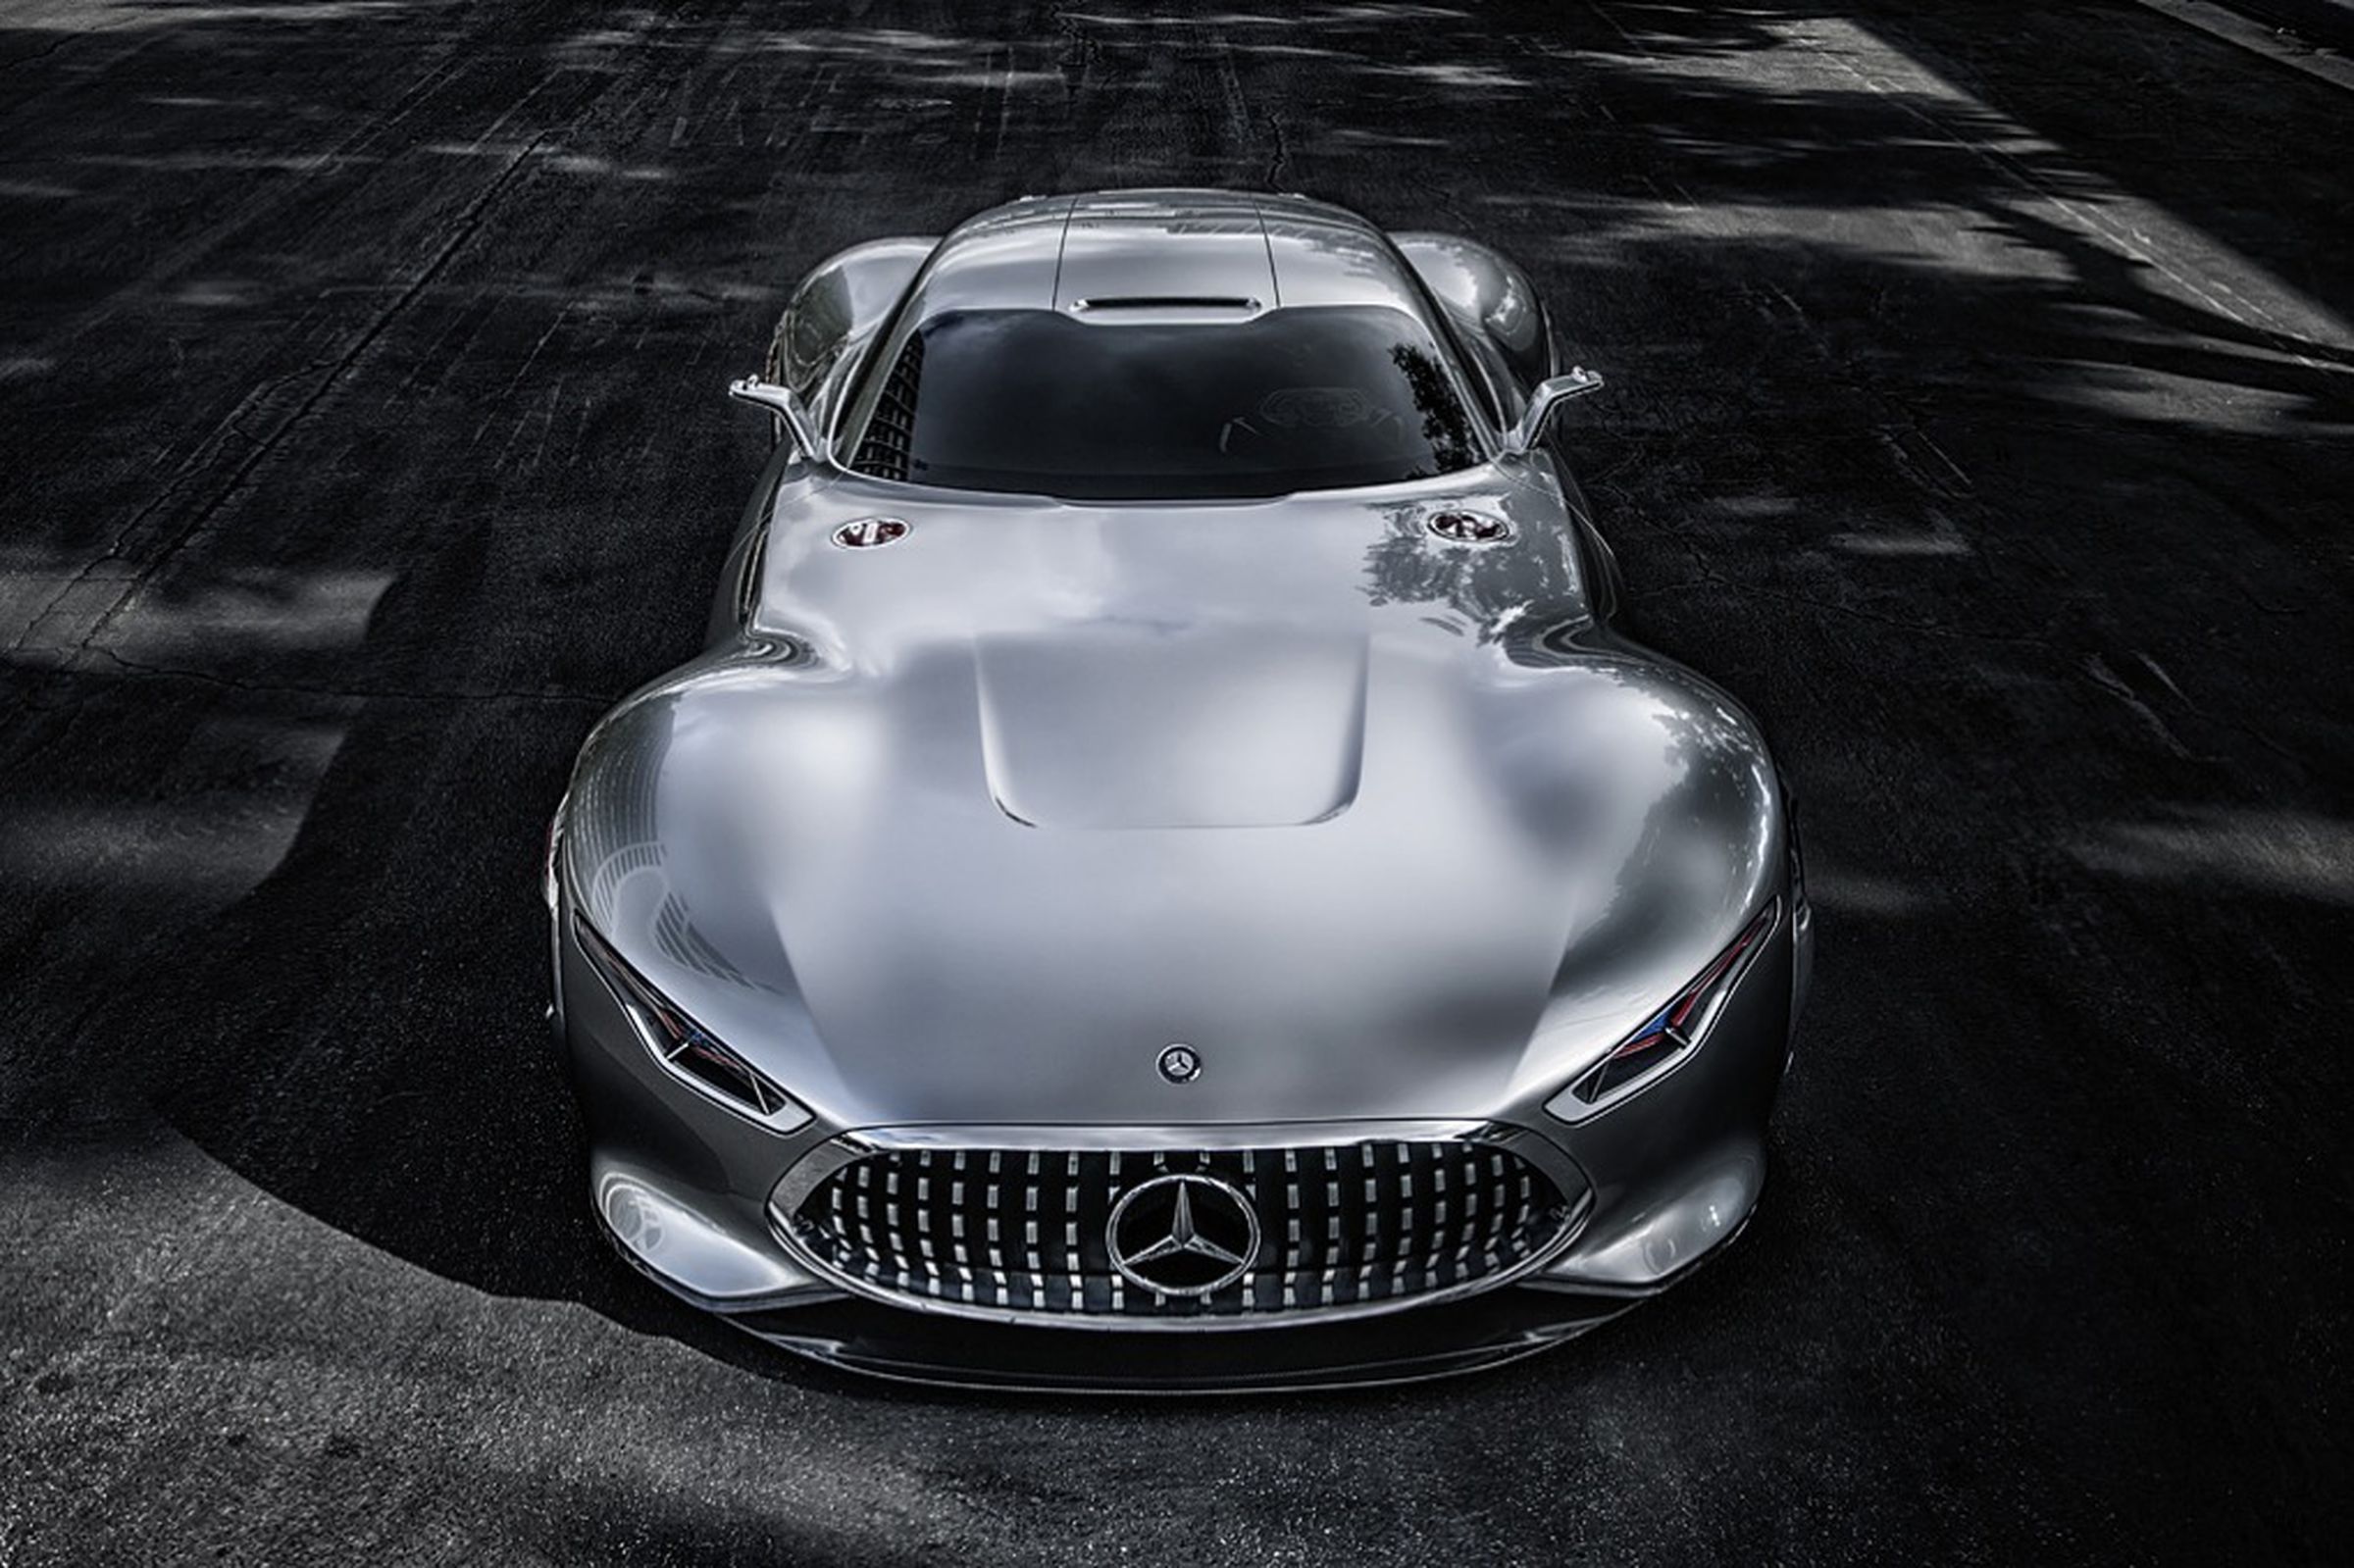 Mercedes-Benz AMG Vision Gran Turismo concept supercar